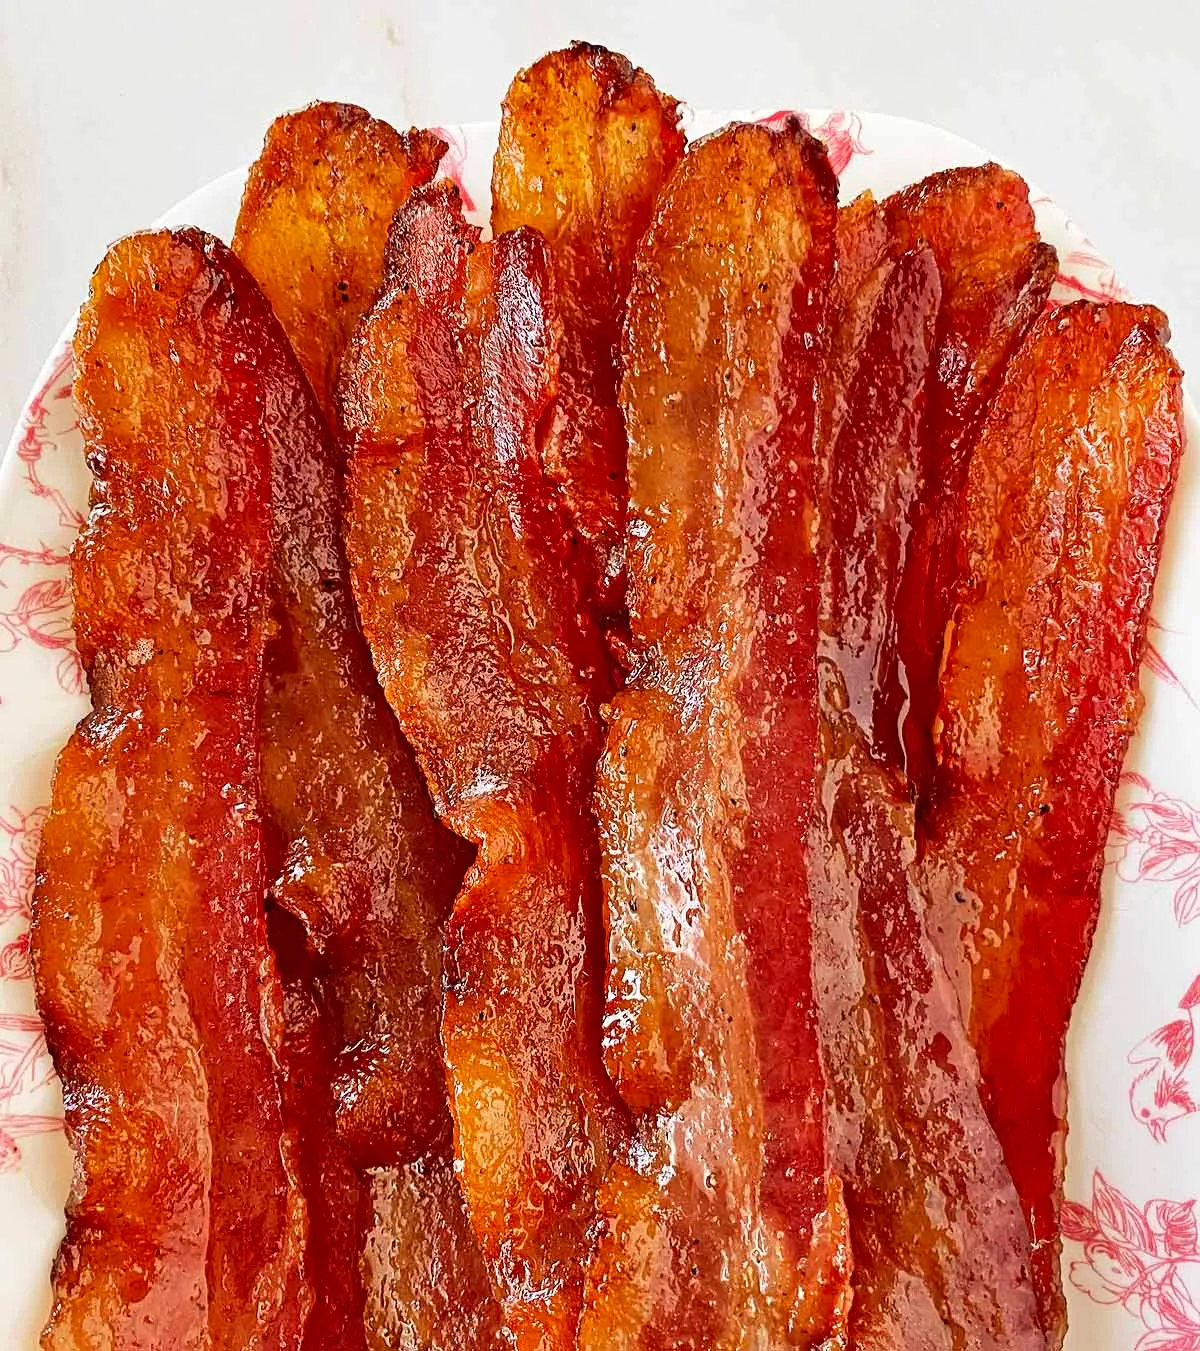 Million dollar bacon on a plate .